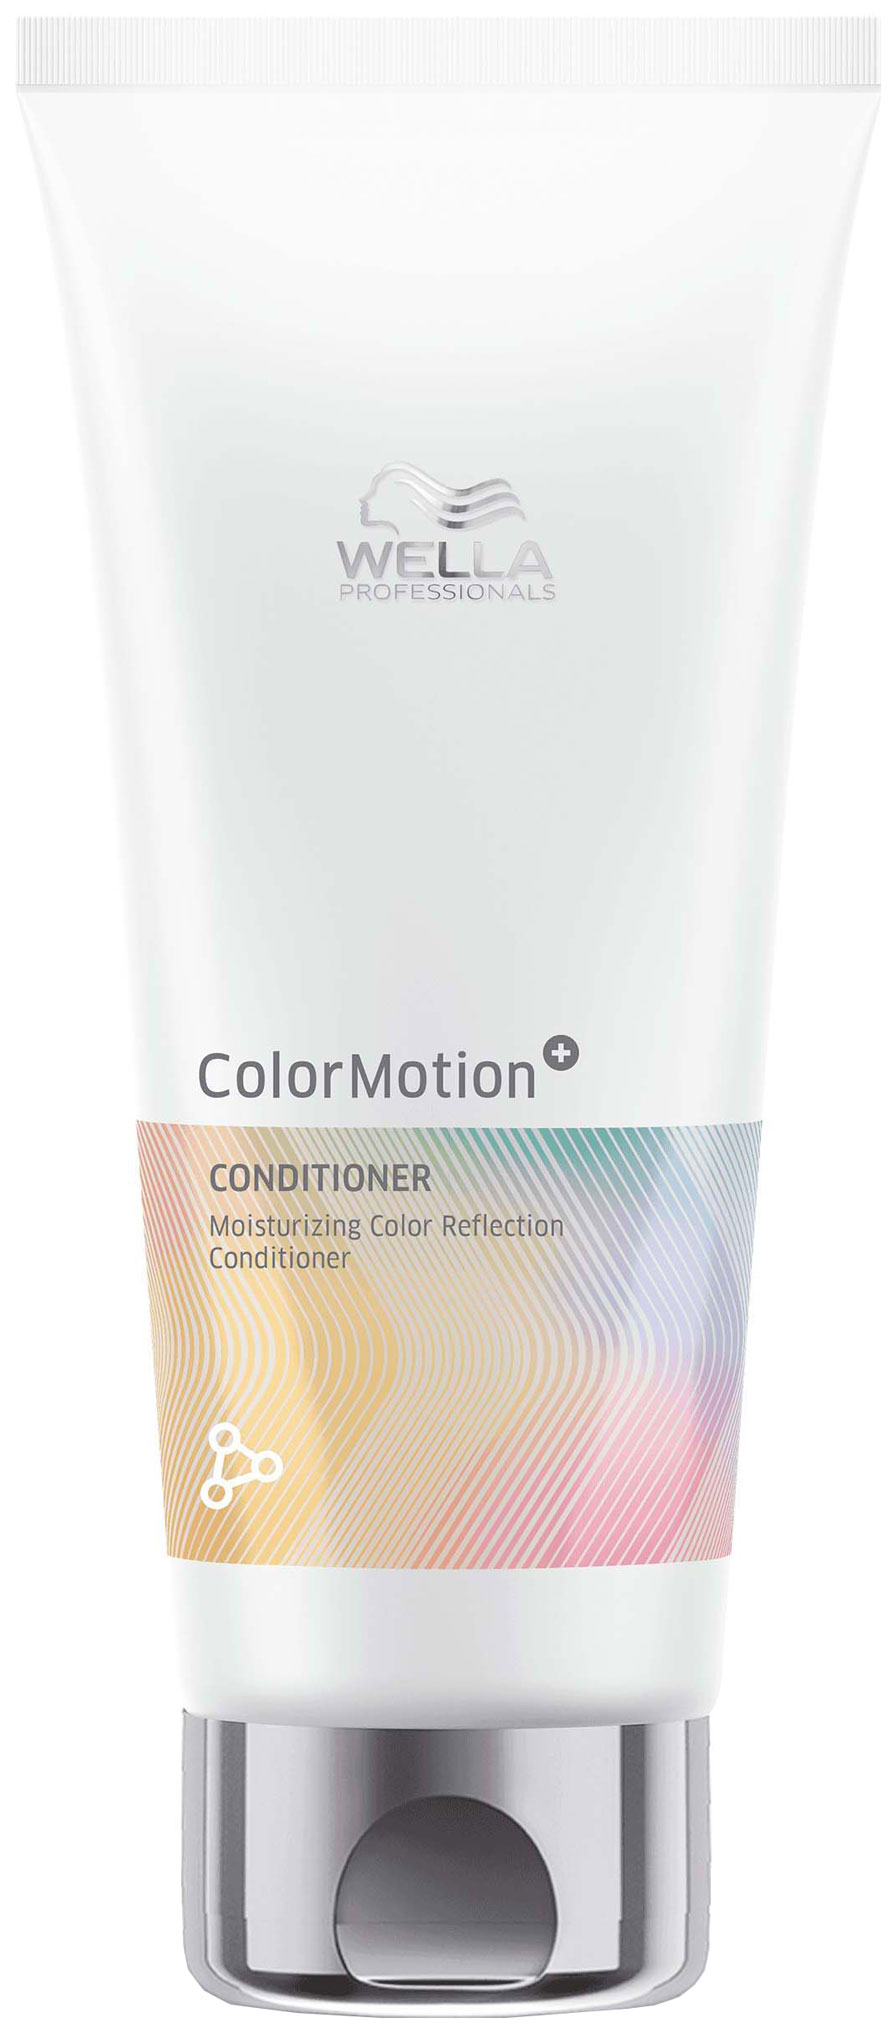 Бальзам Wella Professionals Motion Moisturizing Color Reflection для окрашенных волос увлажняющий бальзам для сияния а окрашенных волос color motion 7657 5874 5676 200 мл